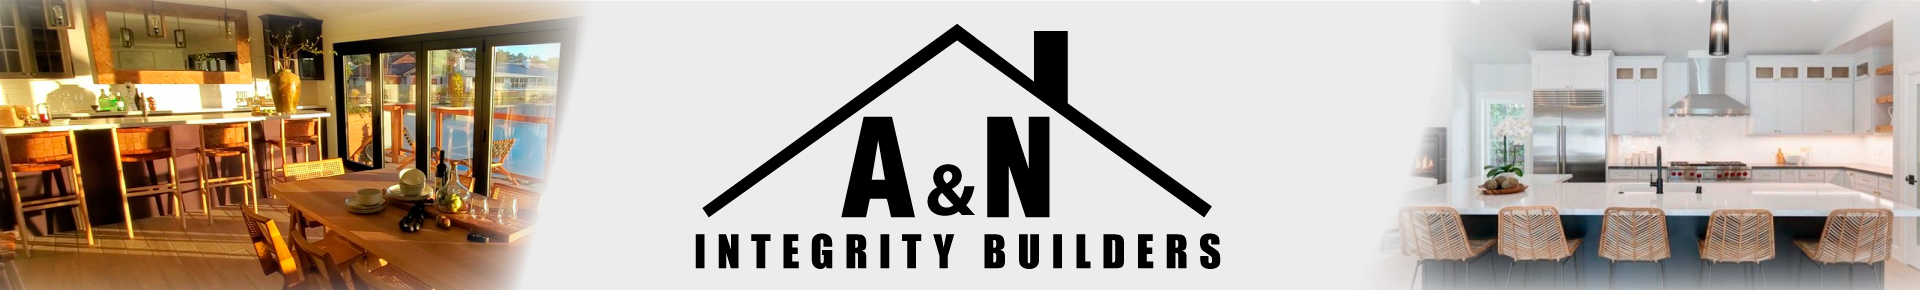 A&N Integrity Builders Inc - Header